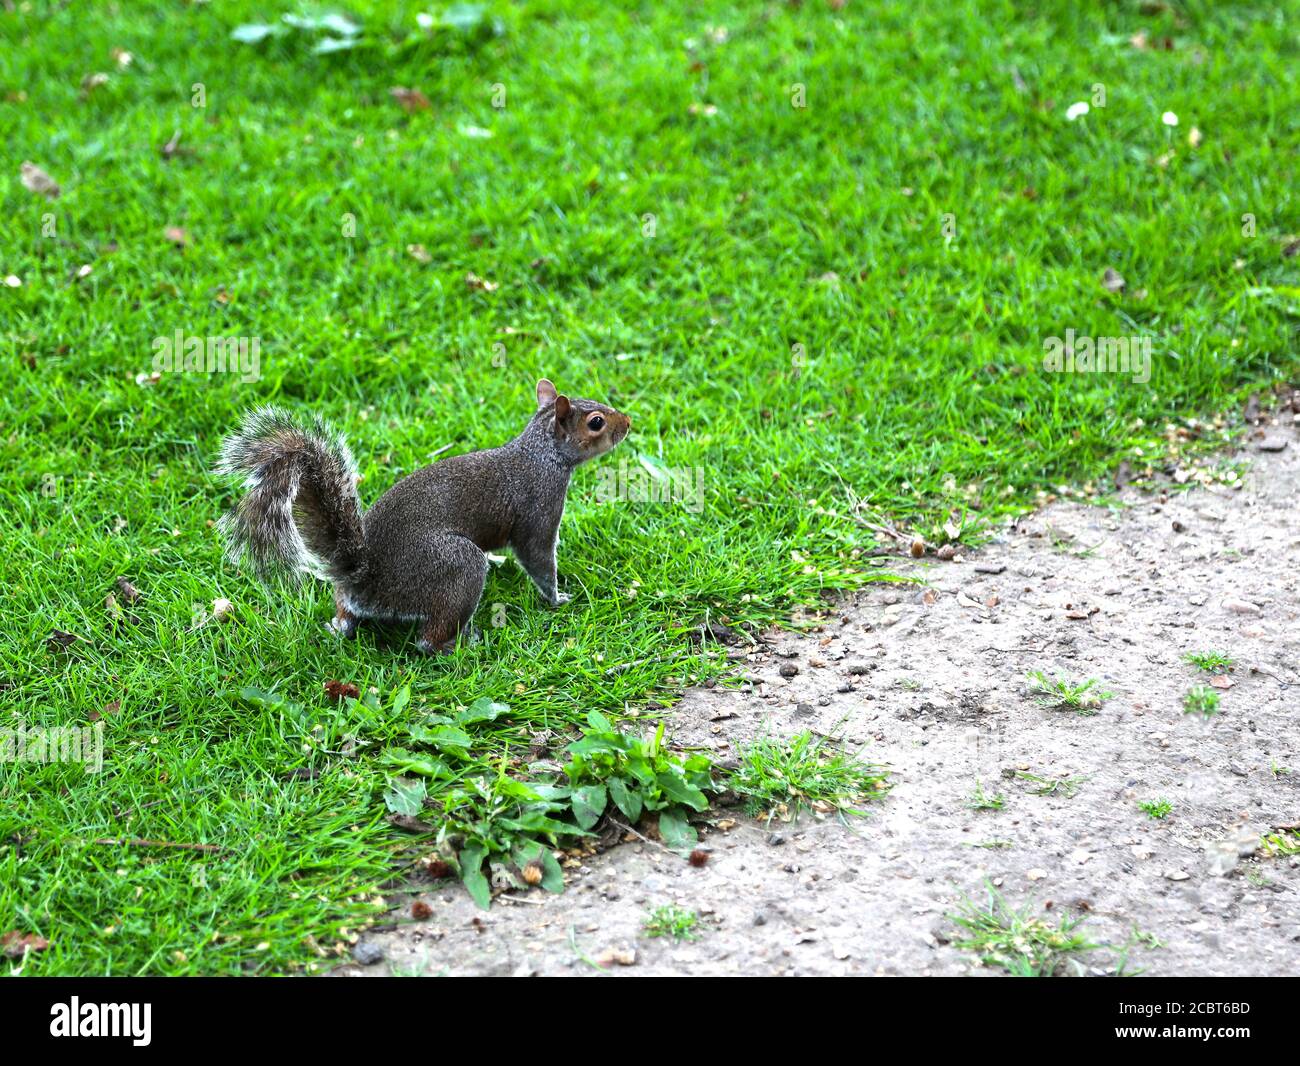 Écureuil de renard, sciurus niger, brun-noir foncé avec une queue broussailleuse sautant sur l'herbe verte. Banque D'Images